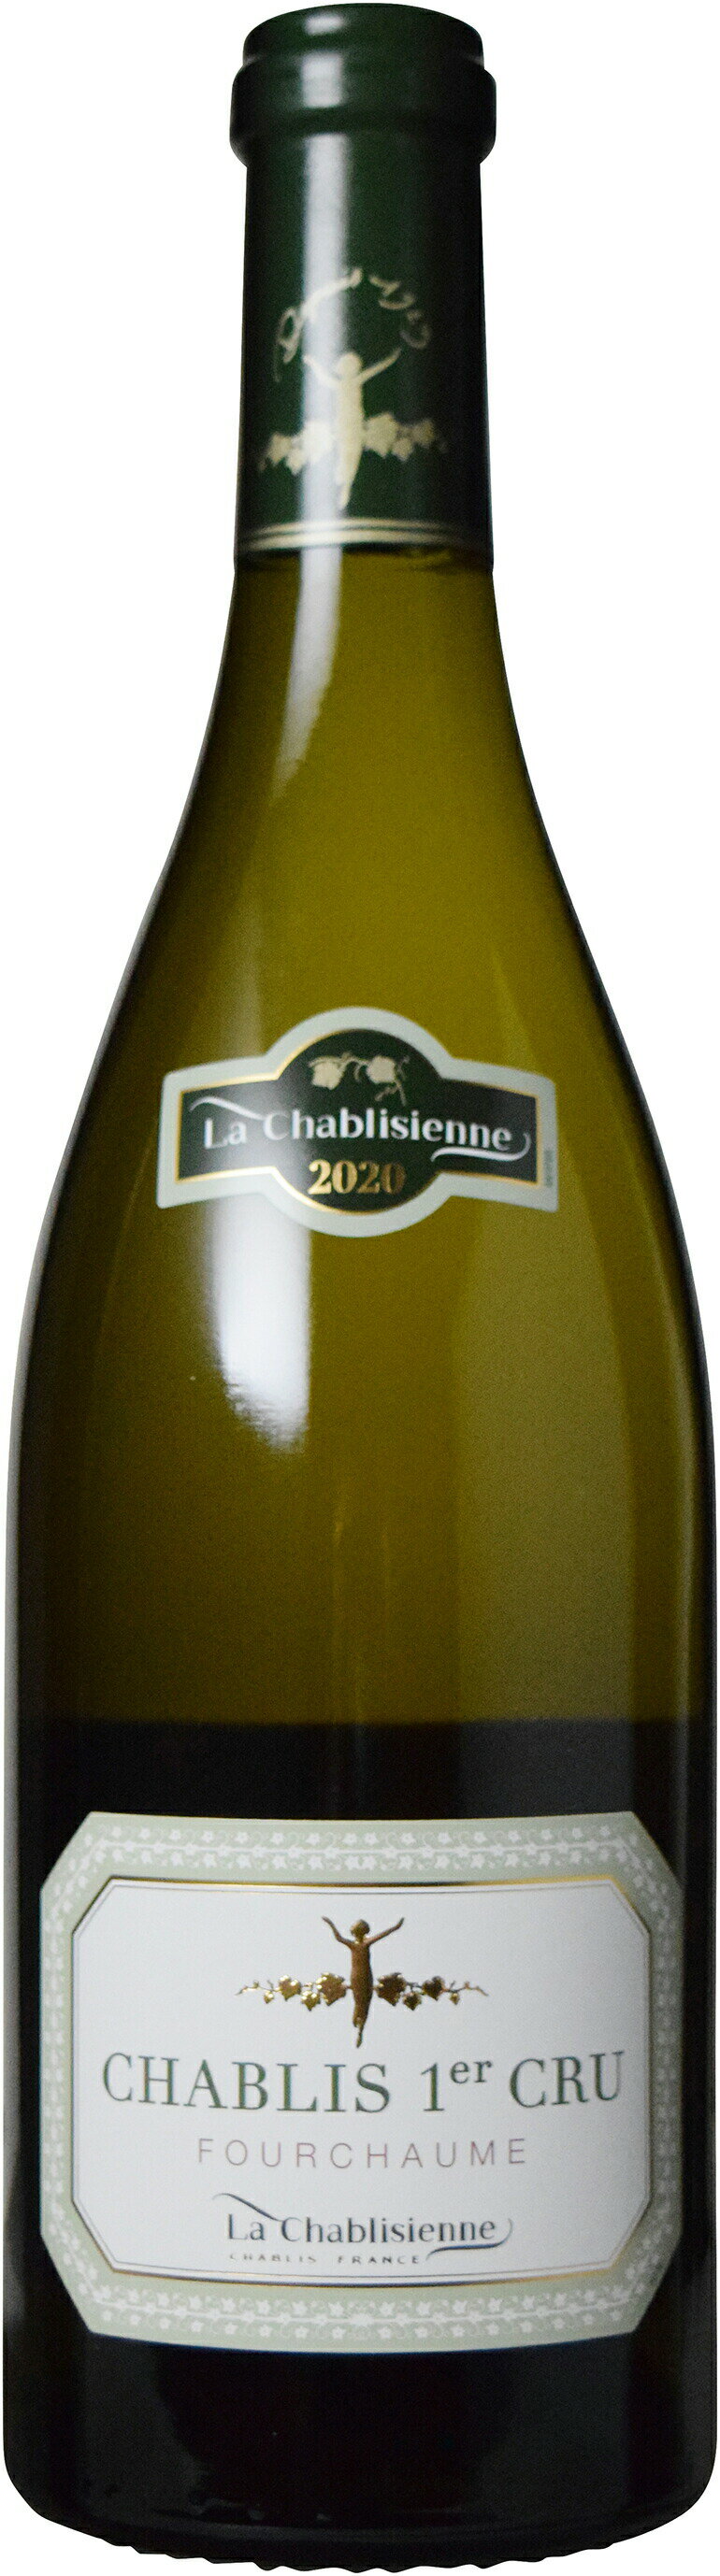 　　シャブリ プルミエ・クリュ フルショーム 2020 750ml Chablis 1er Cru Fourchaume シャブリジェンヌ白ワイン ブルゴーニュ　　　ギフト 父の日 金賞 750ML おすすめ